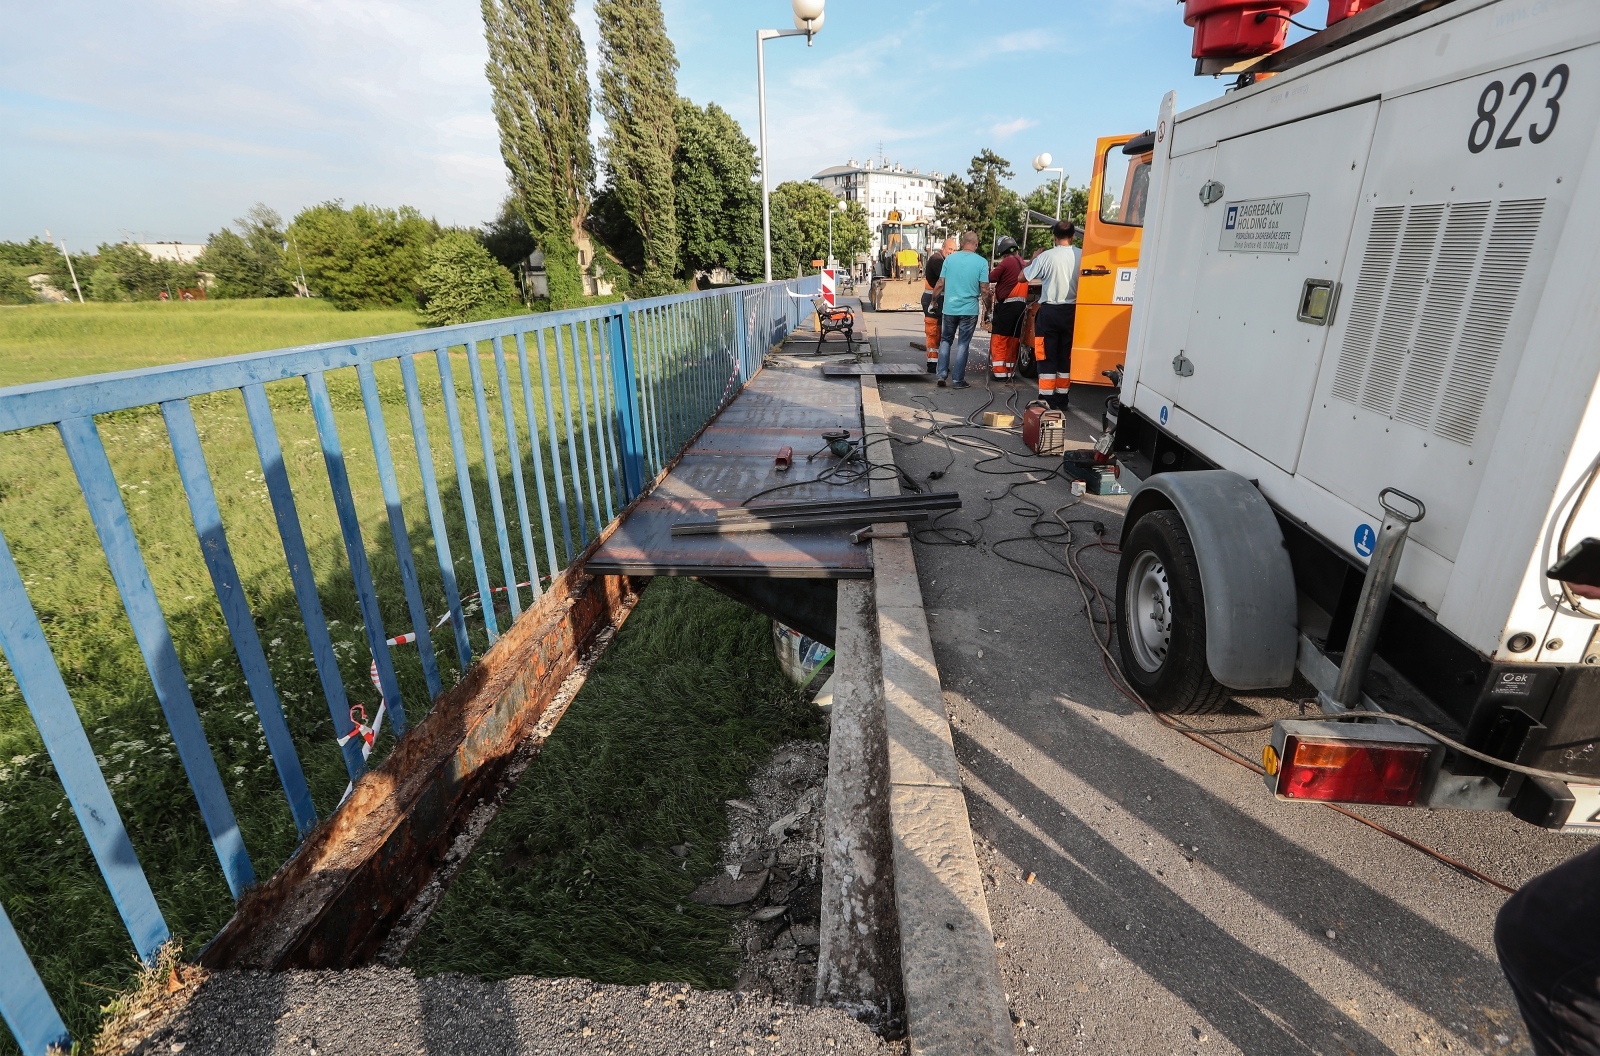 06.06.2019., Zagreb - Sanacija Savskog mosta na dijelu gdje je propao komad plocnika. Photo: Robert Anic/PIXSELL